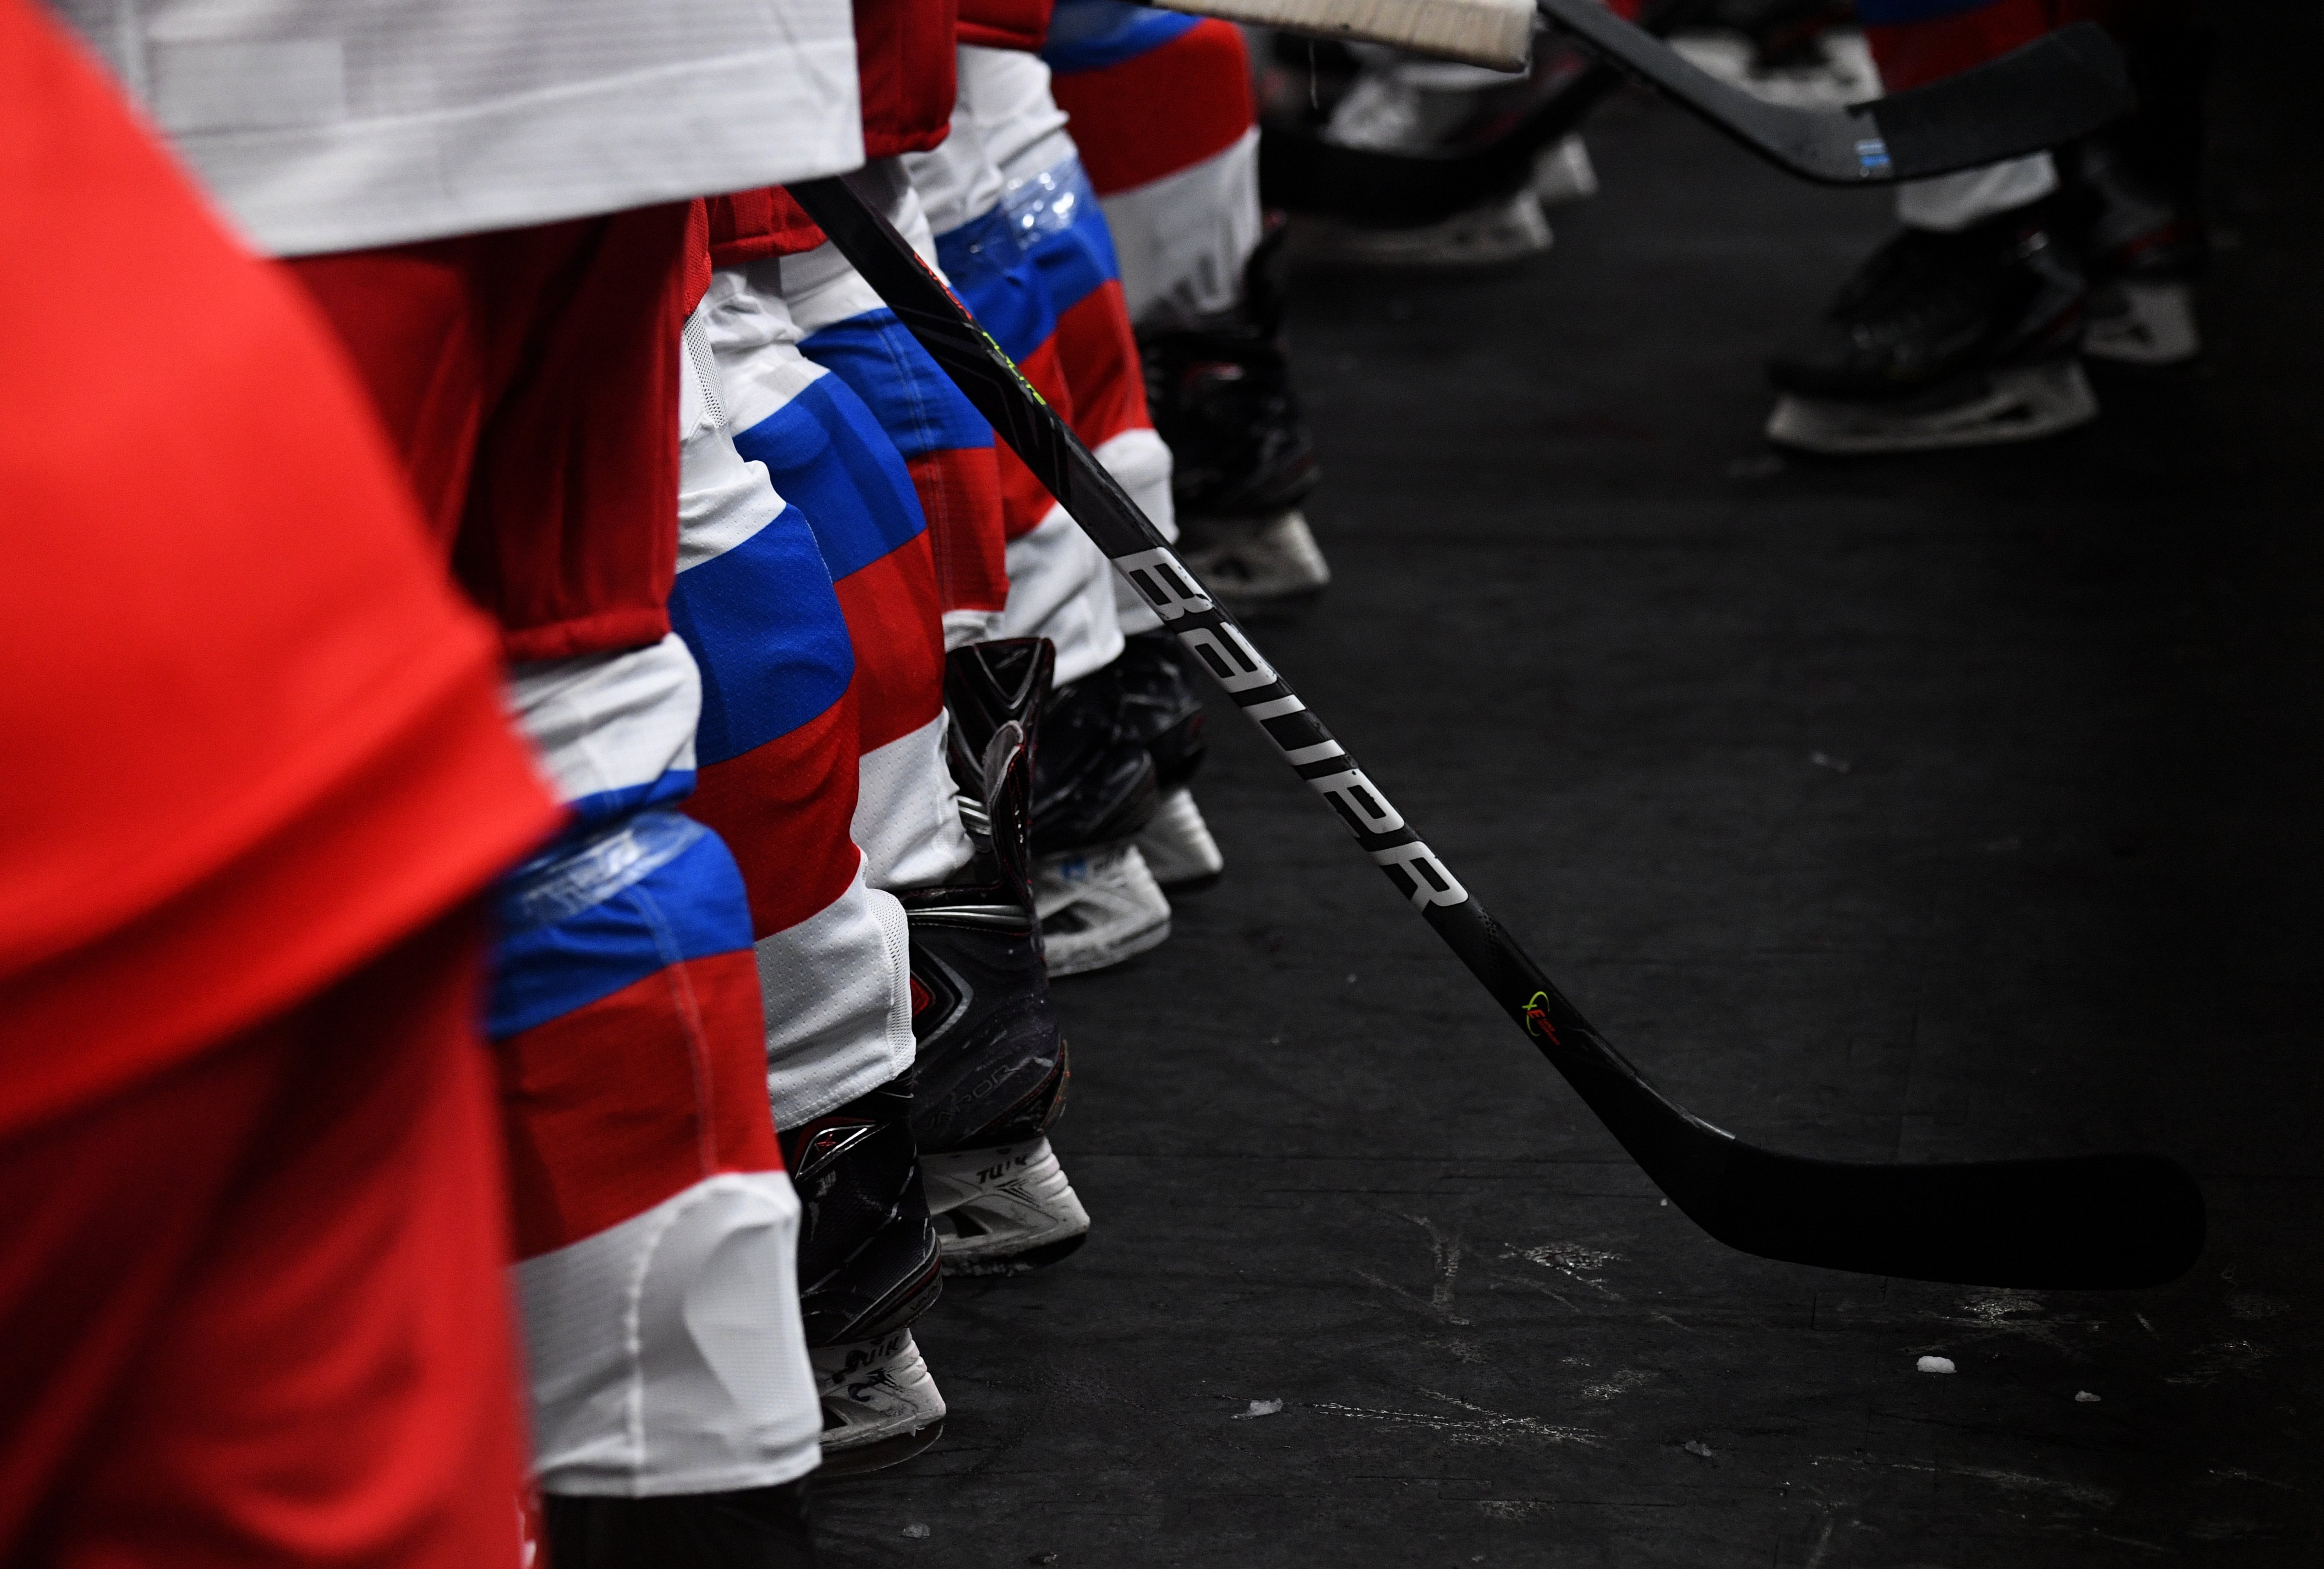 Хафизуллин покинул расположение сборной России по хоккею из-за травмы